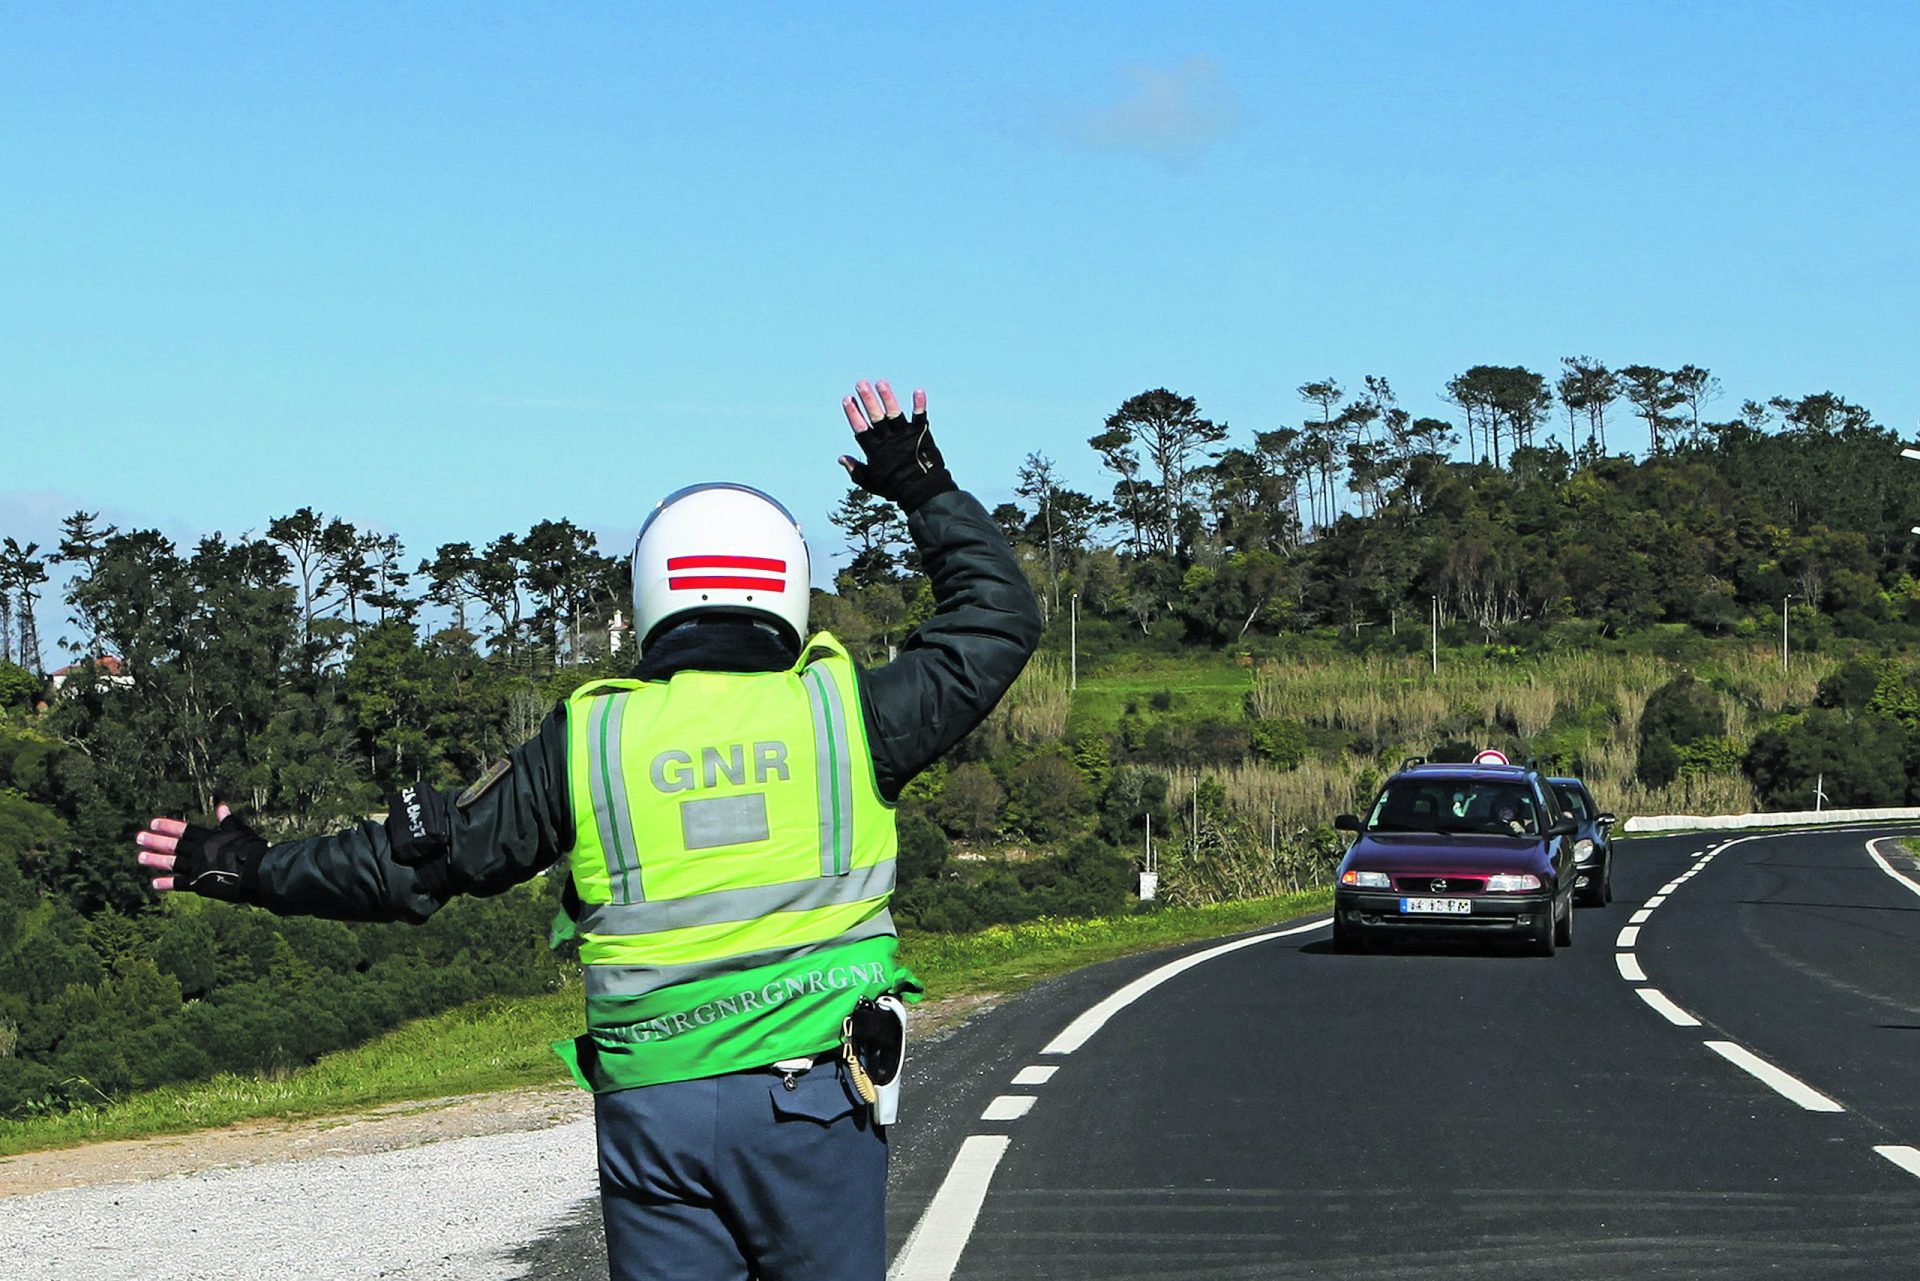 Operação “Smartphone, Smartdrive” nas estradas portuguesas até domingo